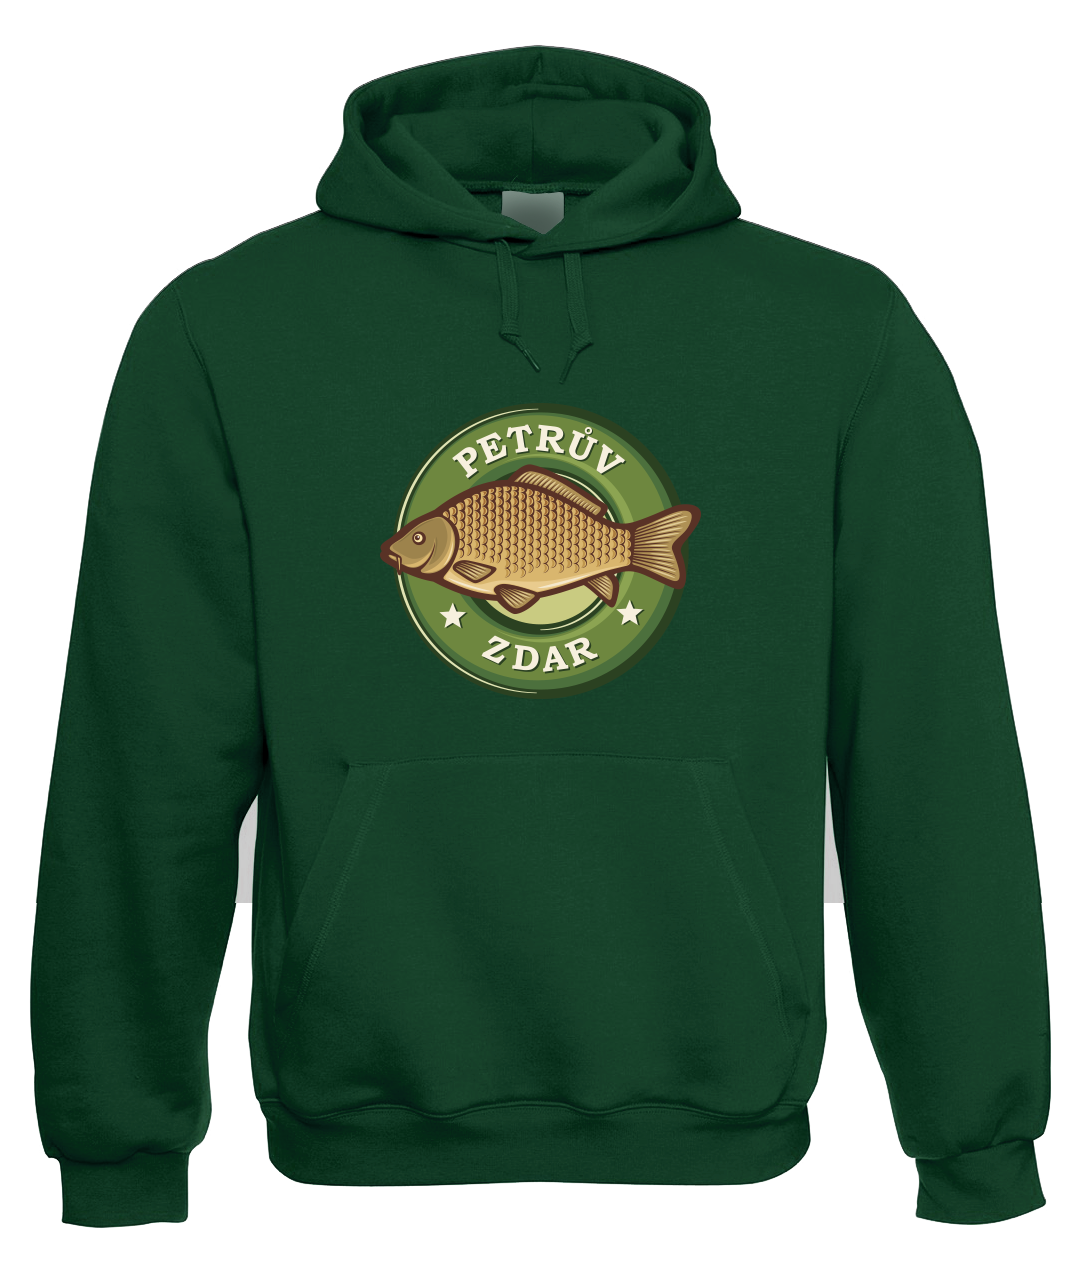 Rybářská mikina - Petrův zdar (kapr) Velikost: XL, Barva: Zelená lahvová